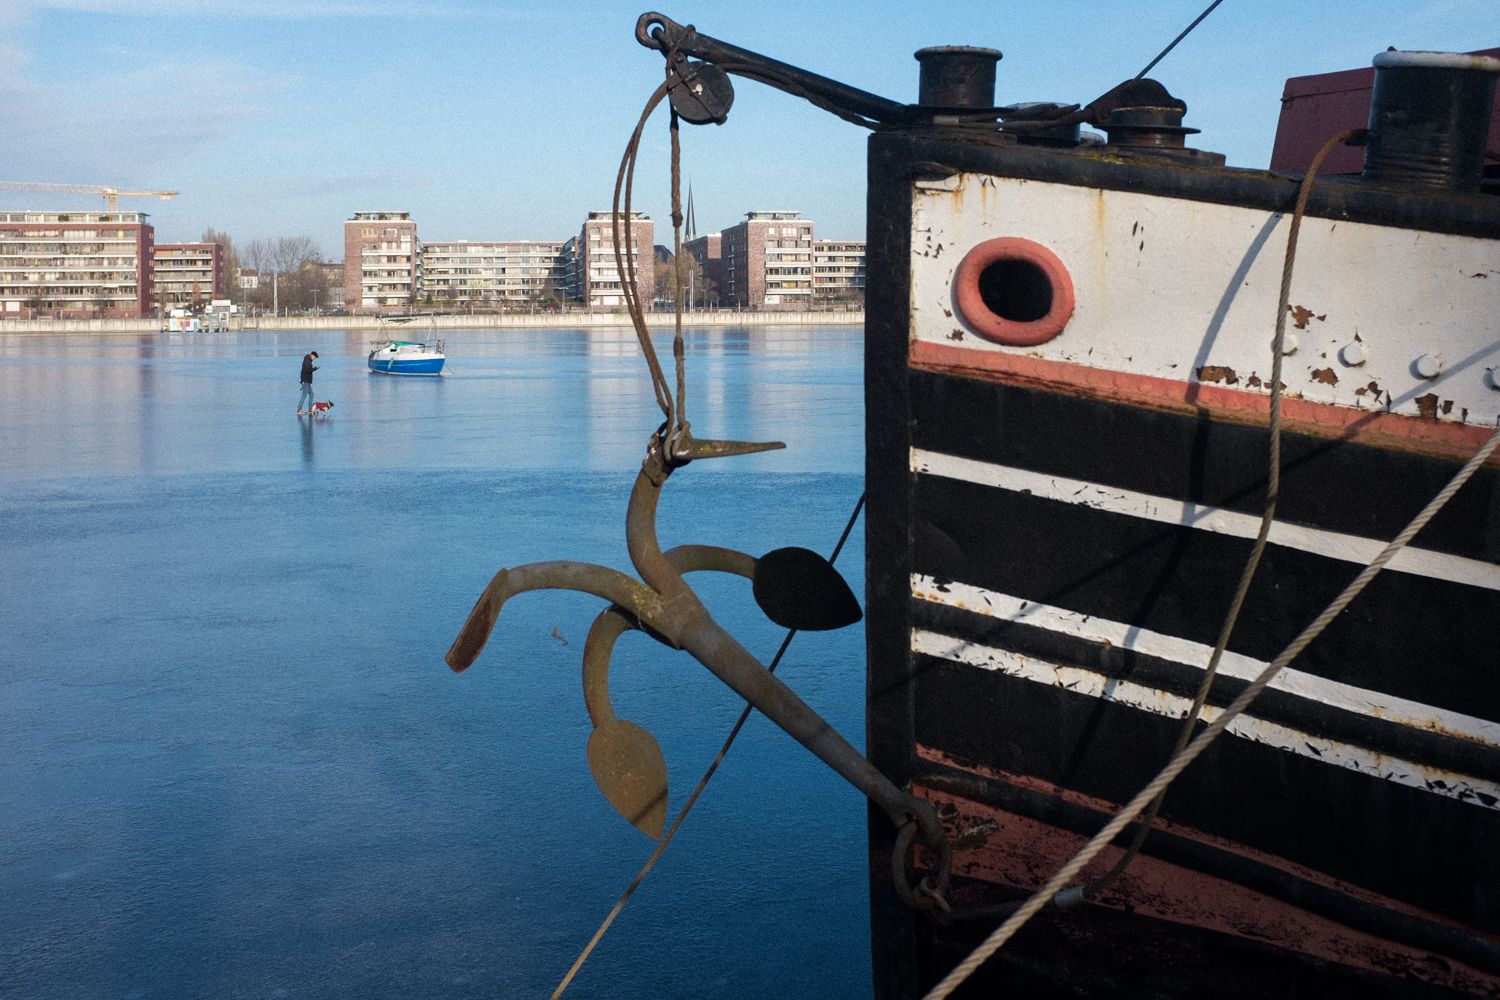 Zugefrorene Spree in der Rummelsburger Bucht Berlin. Ein Mann spaziert auf dem Eis. Im Vordergrund ein altes Boot. Street Photography berlin